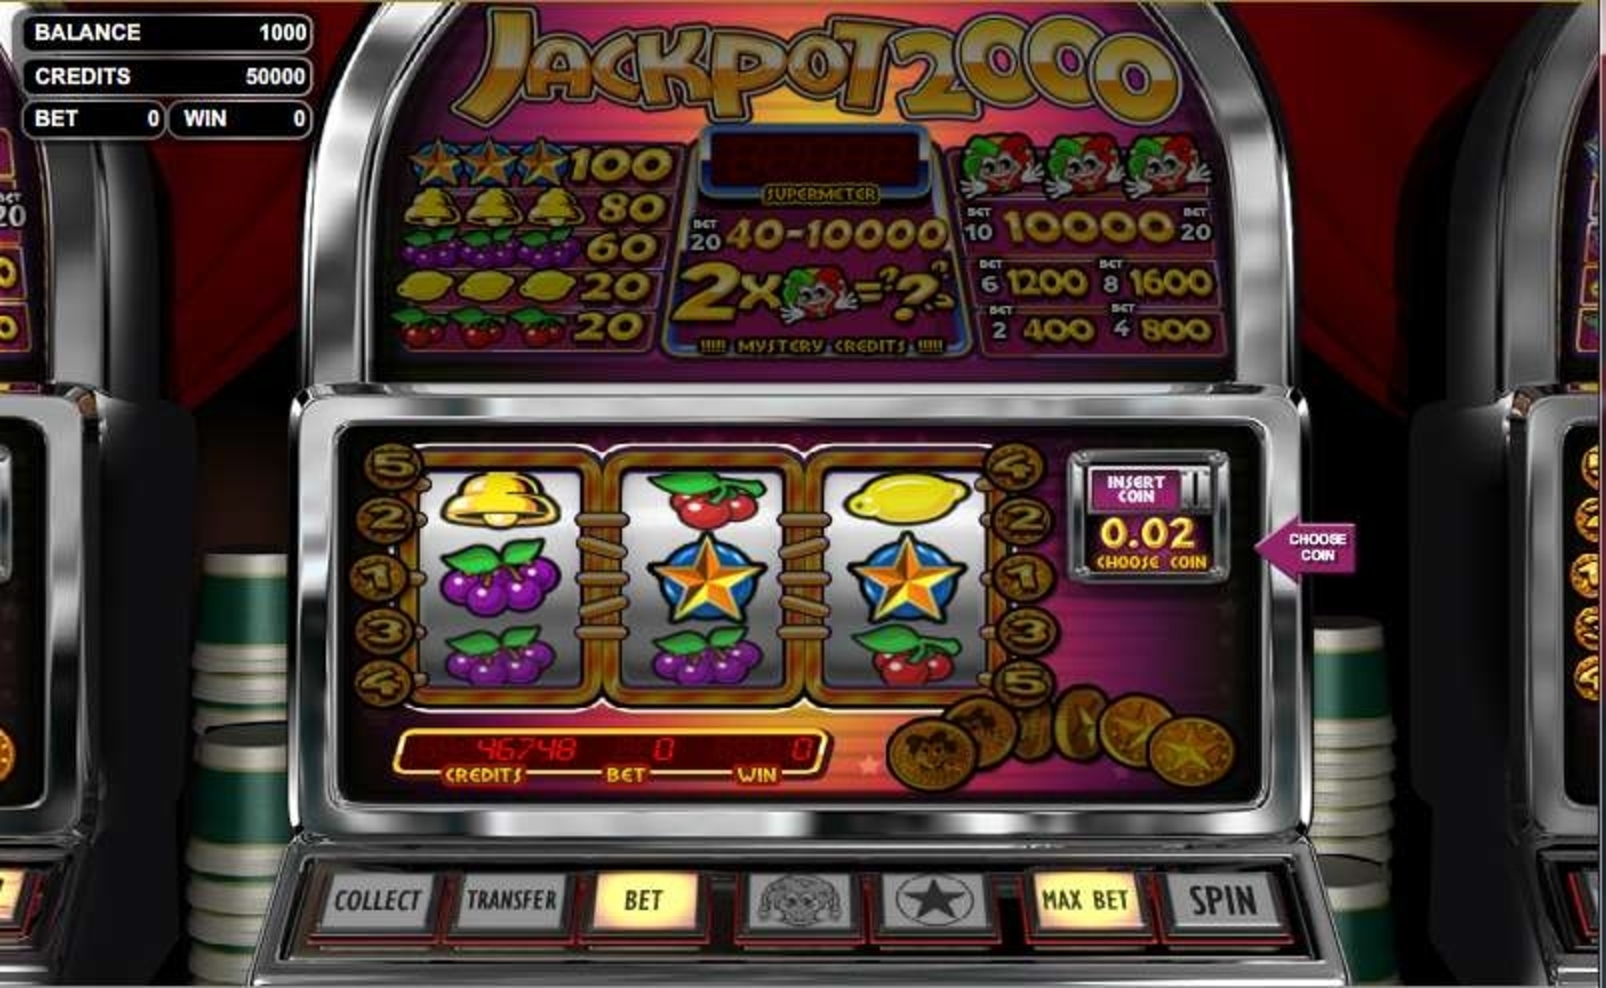 Jackpot 2000 demo